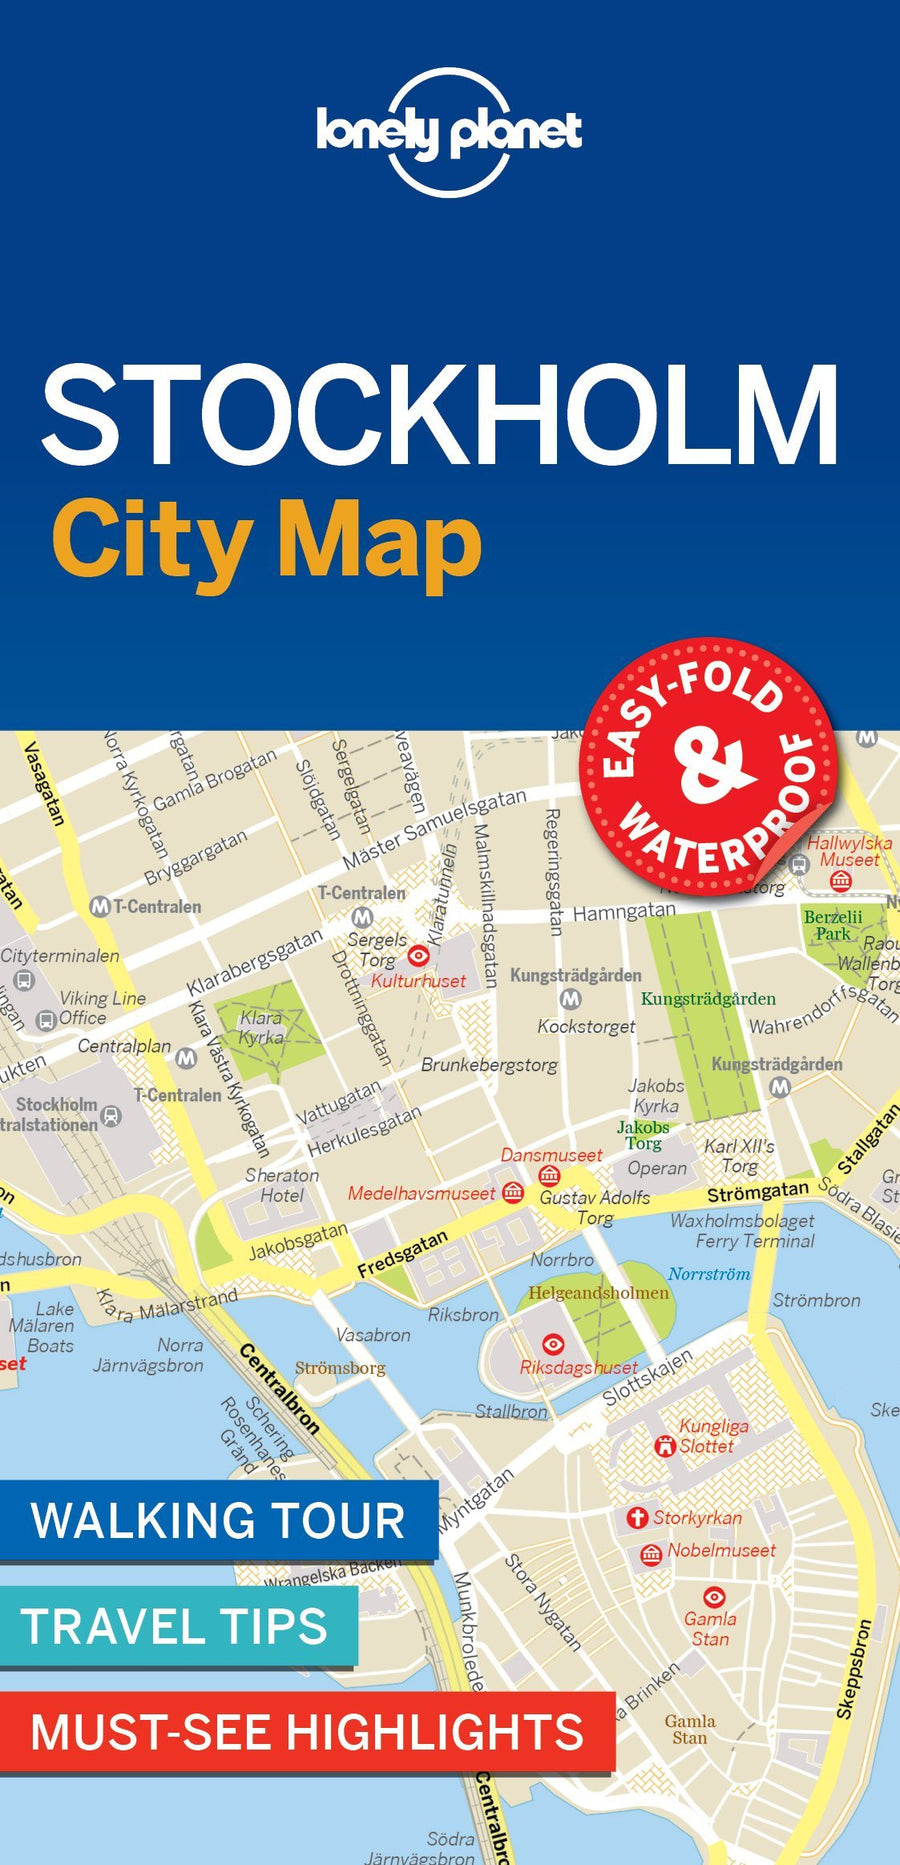 Plan de ville (en anglais) - Stockholm | Lonely Planet carte pliée Lonely Planet 